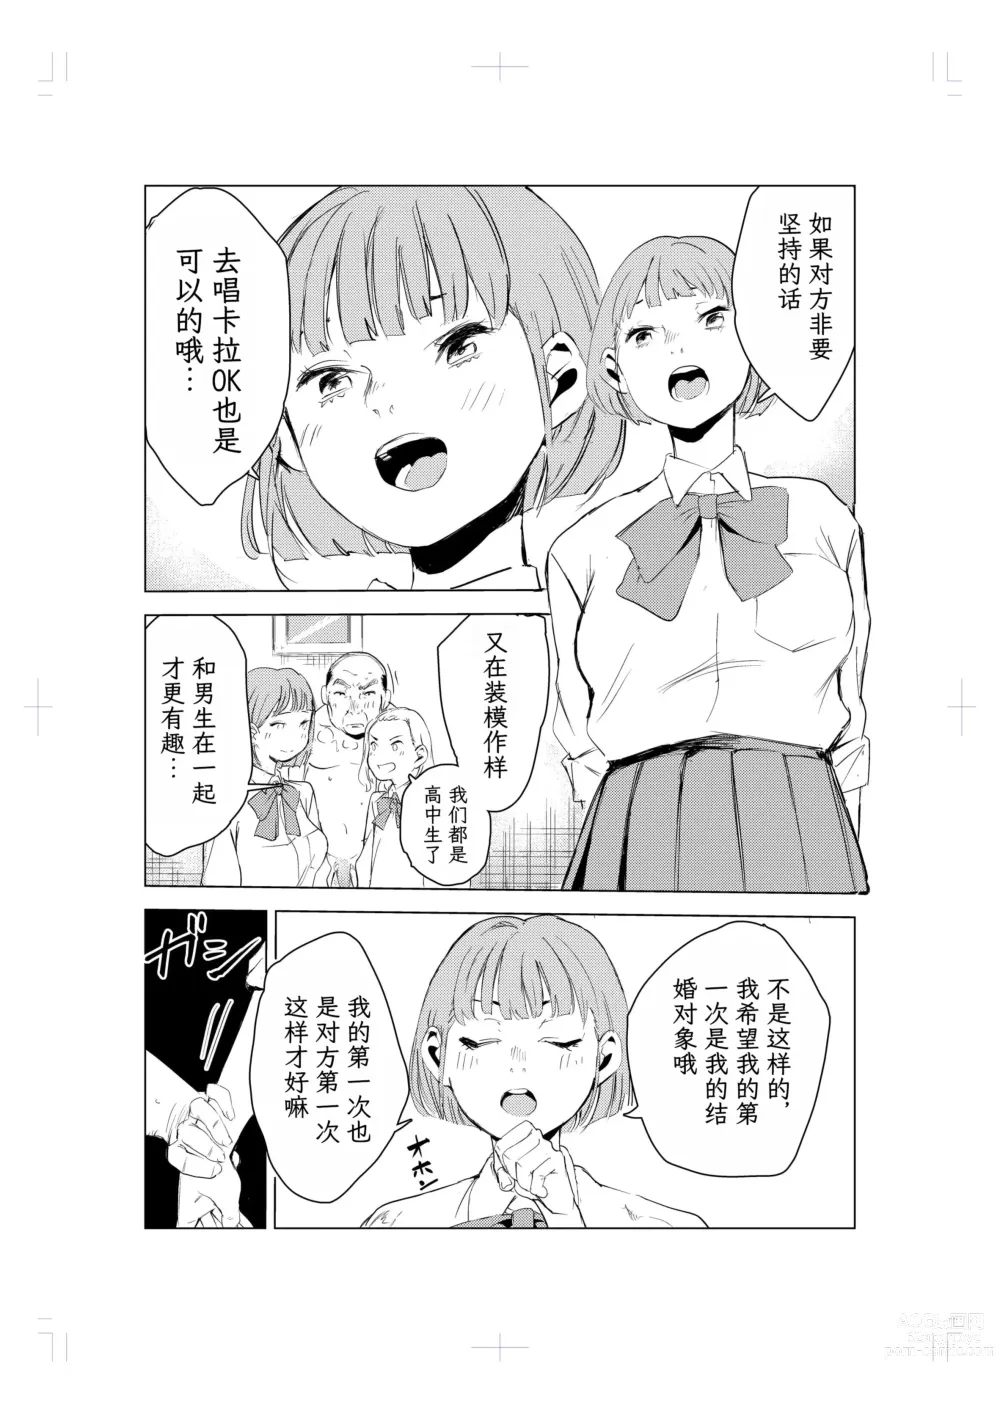 Page 45 of doujinshi 40-sai no Mahoutukai